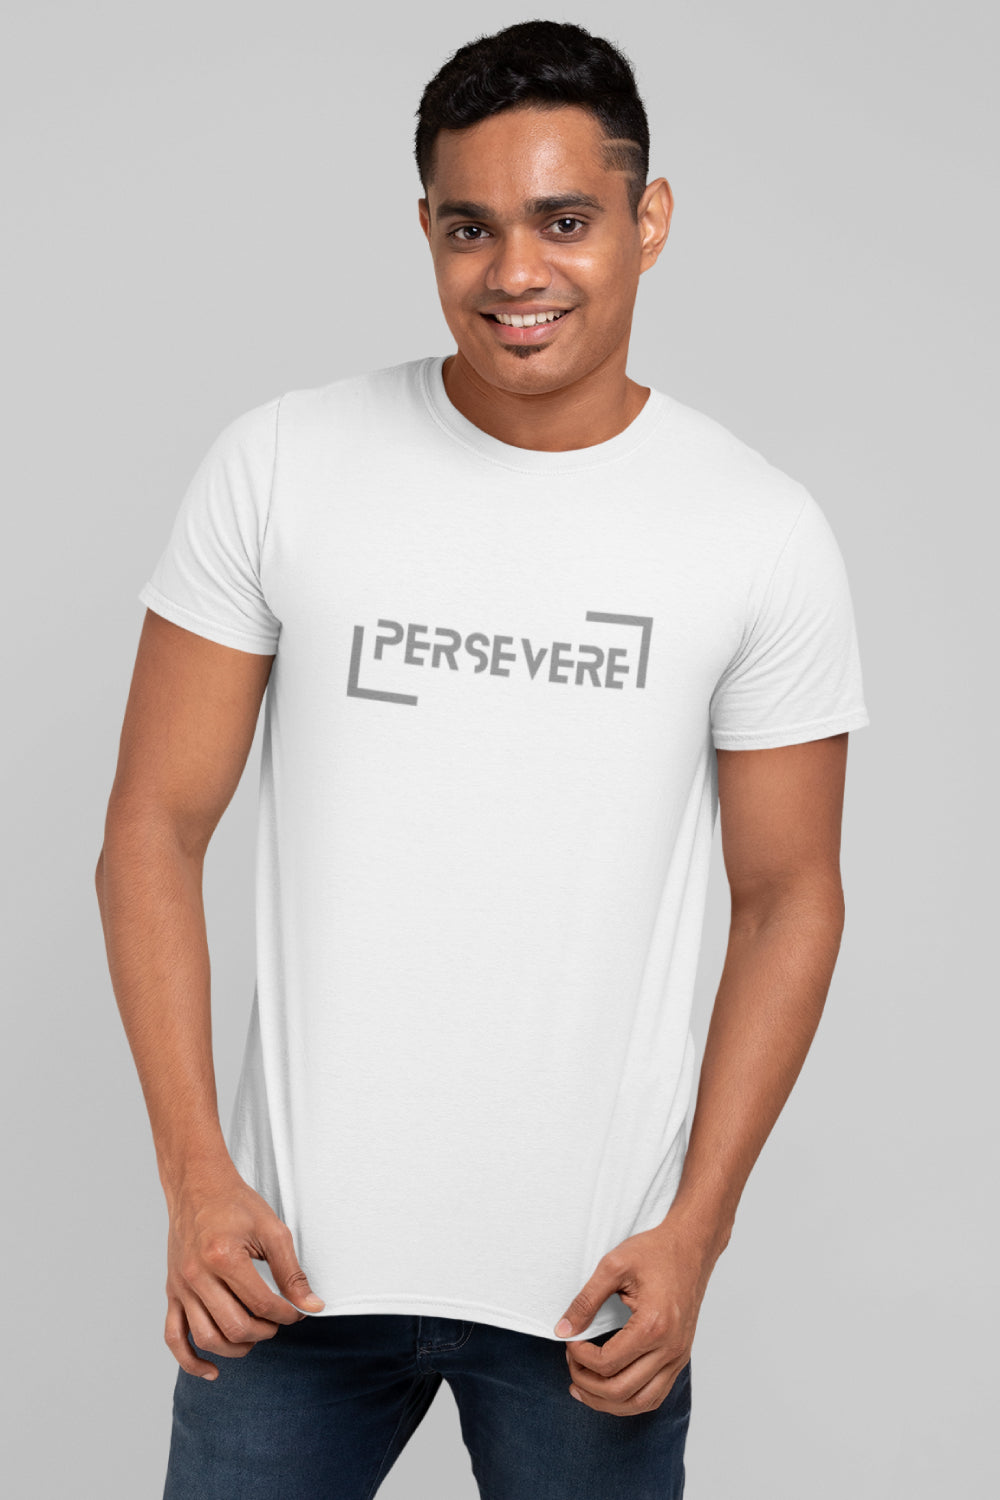 Persevere Print White Tshirt